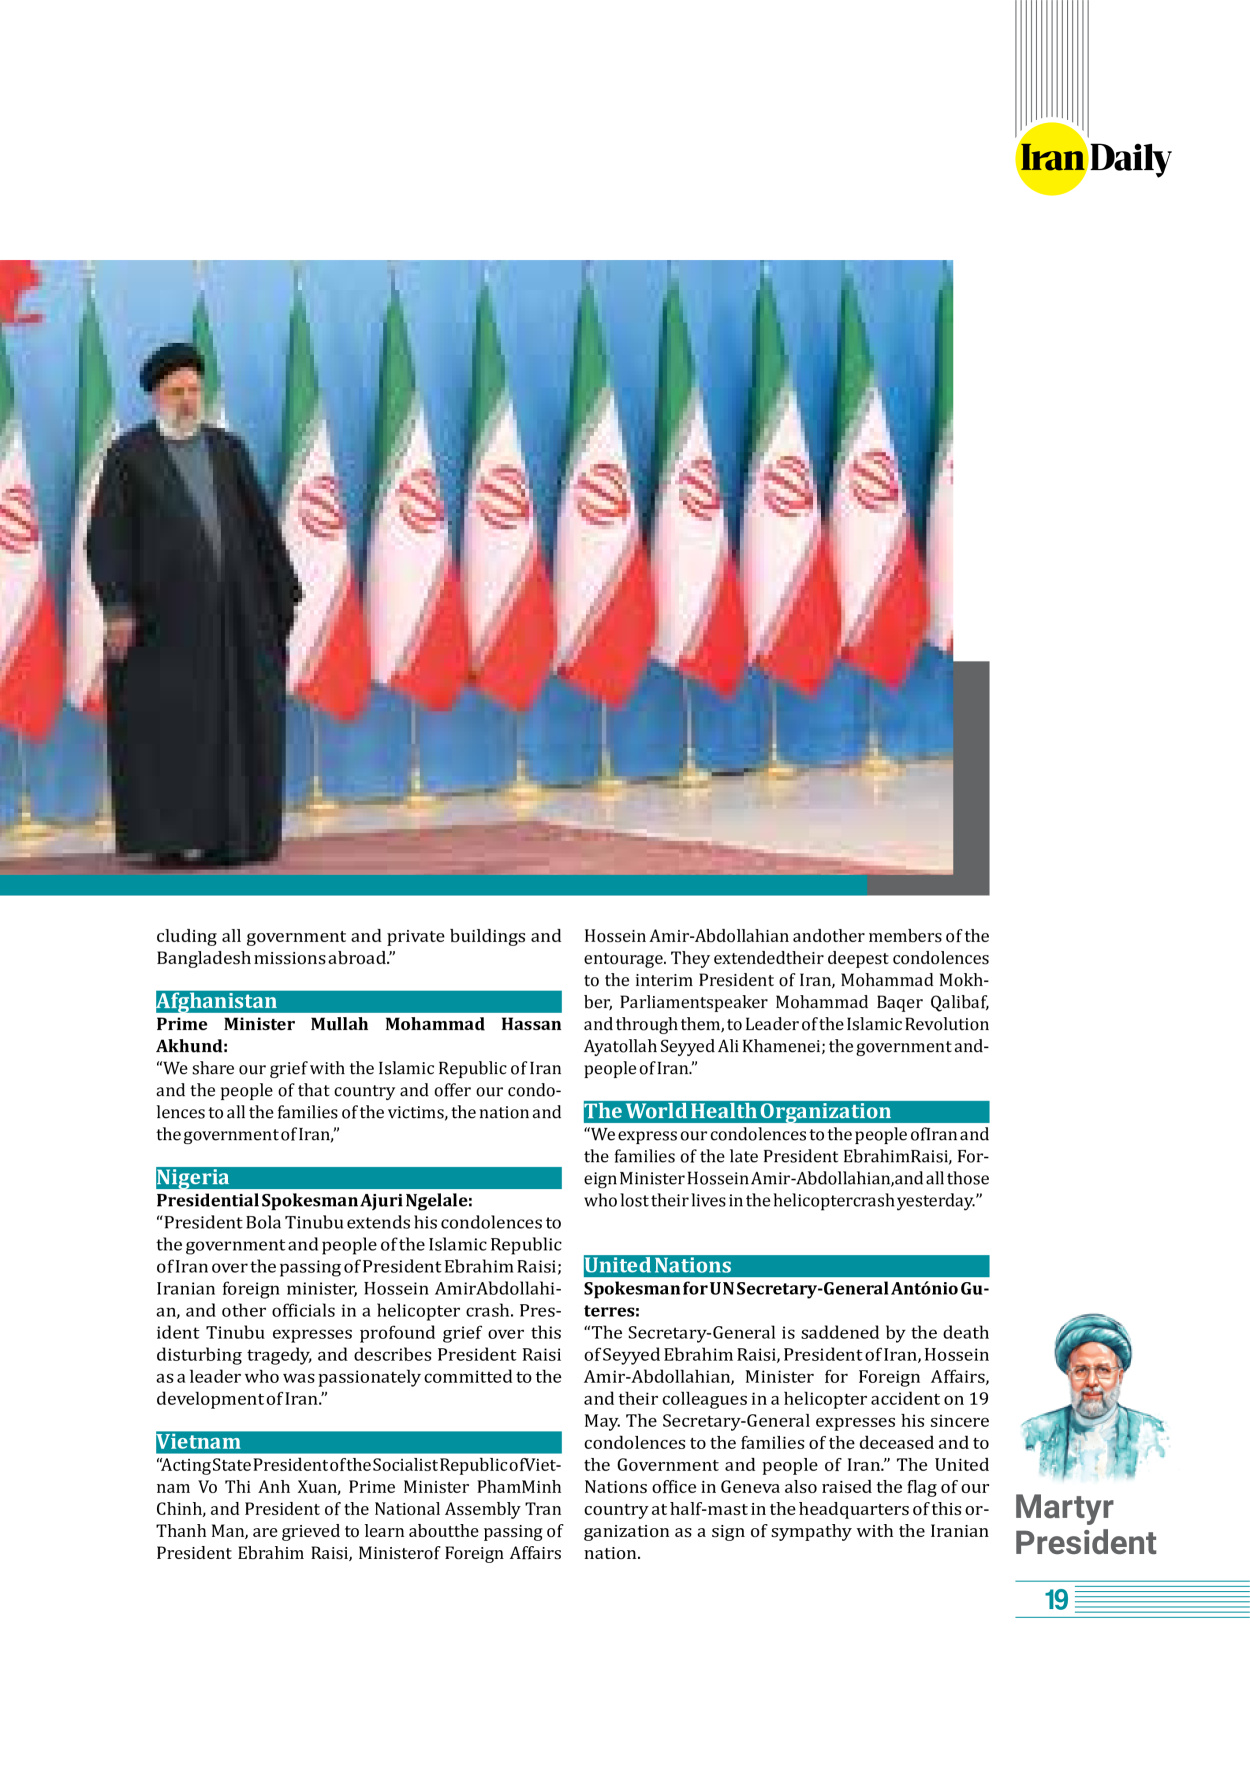 روزنامه ایران - ویژه نامه وِزه نامه چهلم شهید رییسی( انگلیسی) - ۱۷ تیر ۱۴۰۳ - صفحه ۱۹